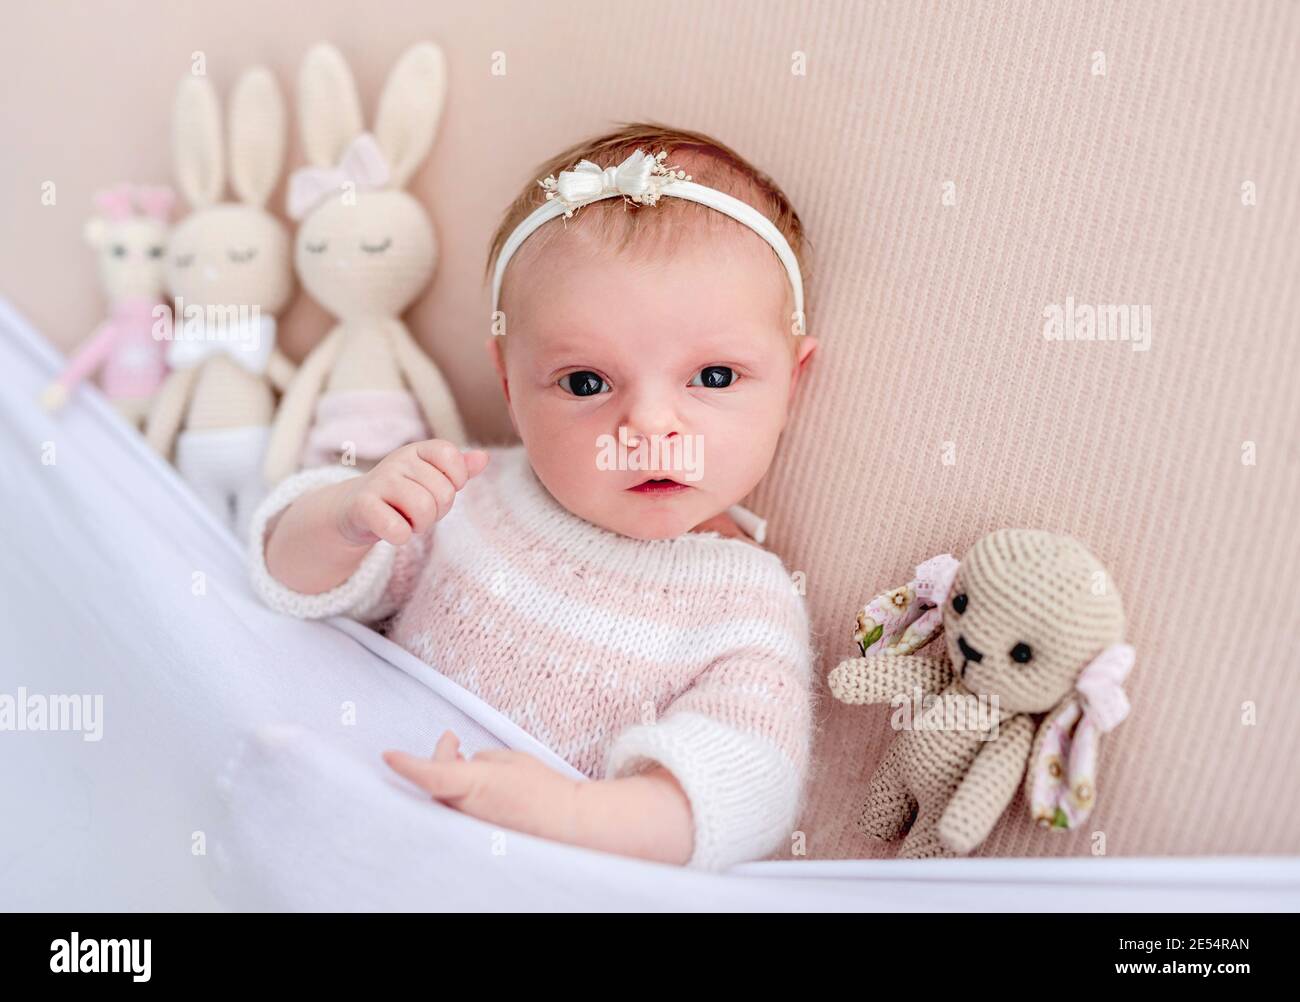 Niña recién nacida acostada junto a juguetes tejidos Foto de stock